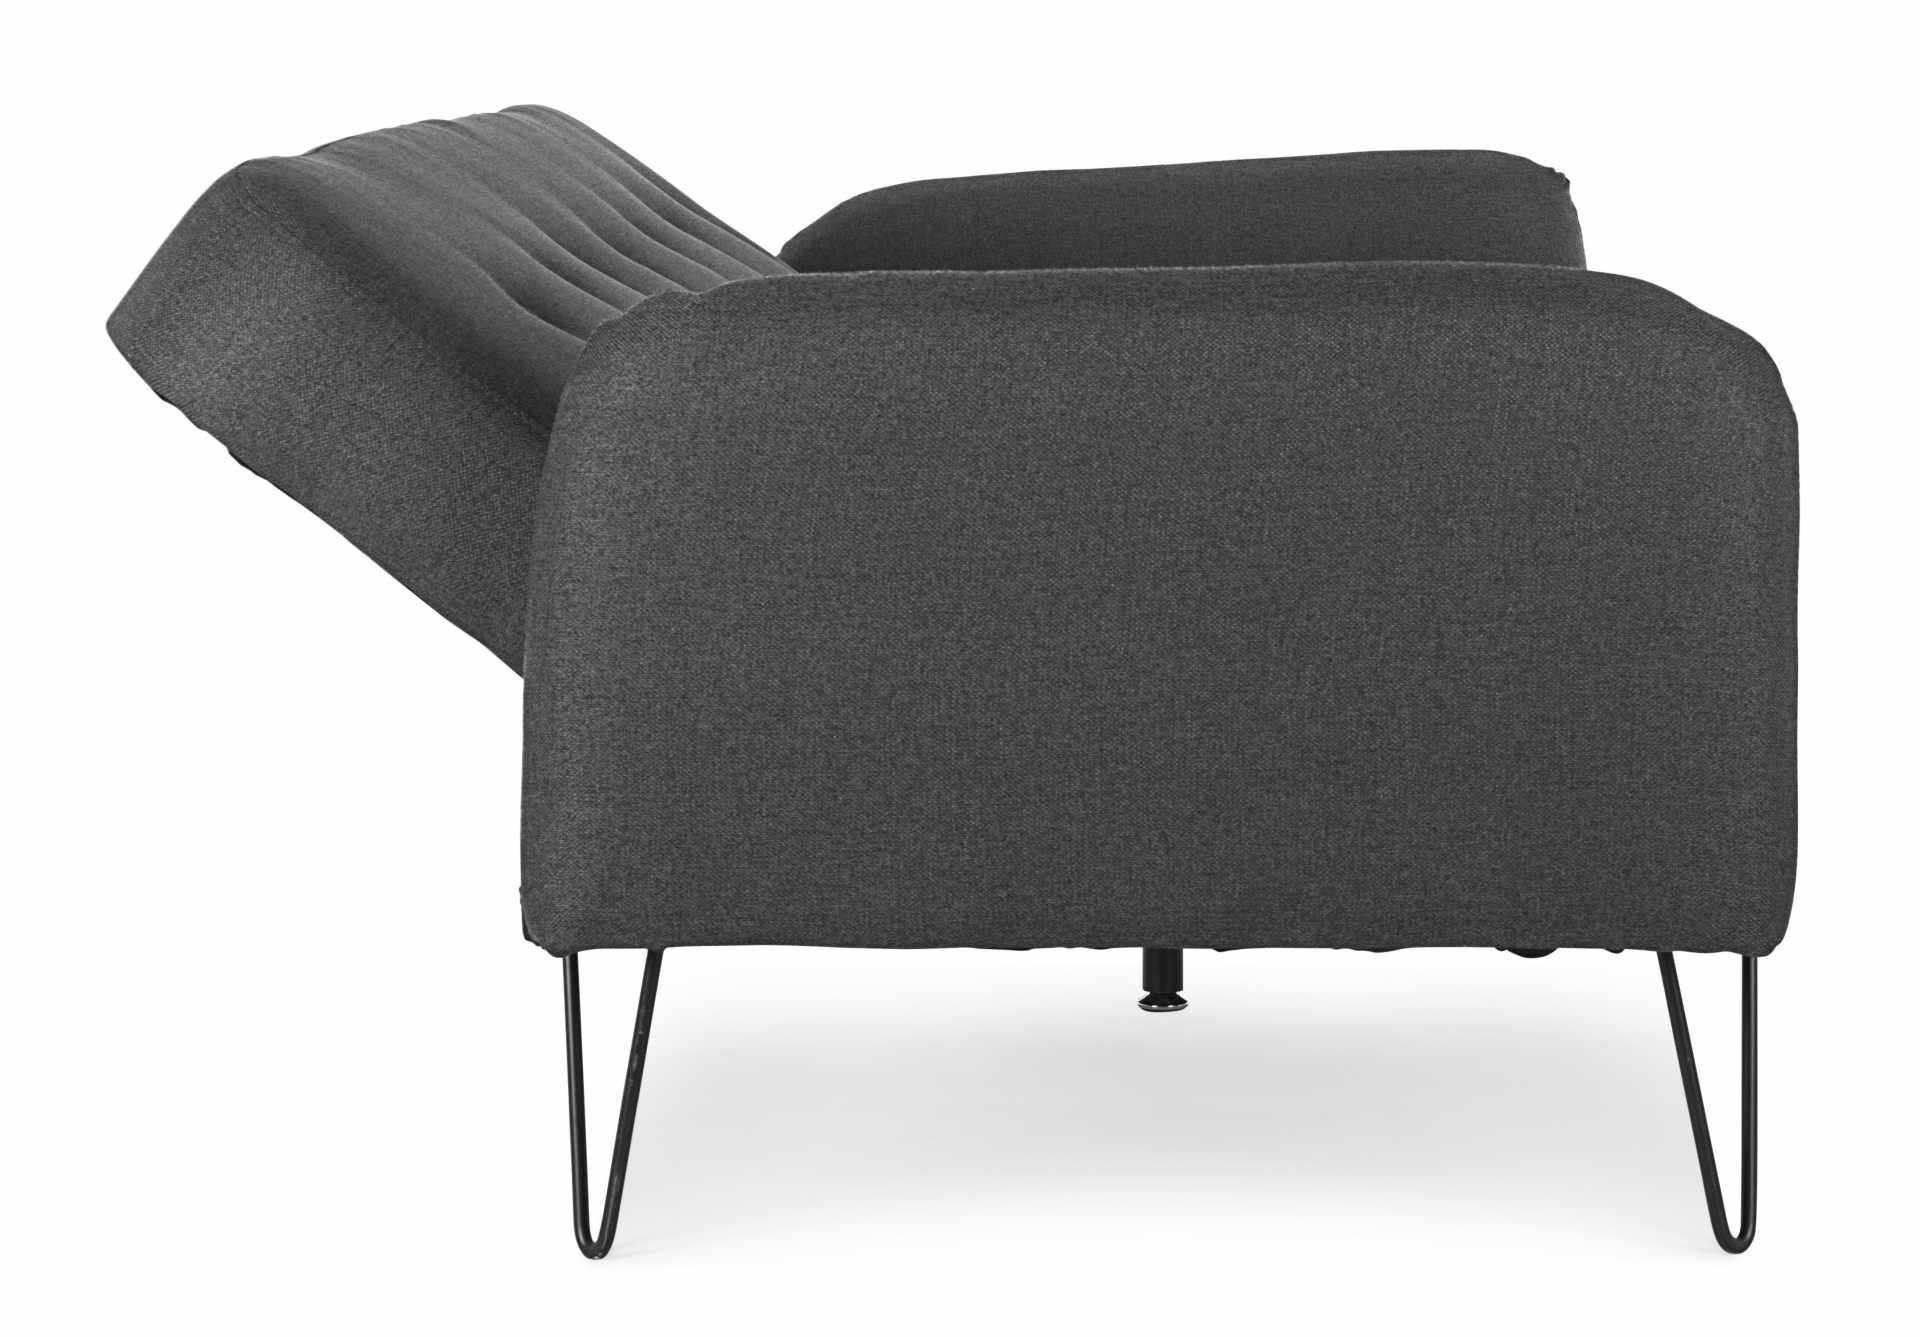 Das Schlafsofa Bridjet überzeugt mit seinem klassischen Design. Gefertigt wurde es aus Stoff, welcher einen schwarzen Farbton besitzt. Das Gestell ist aus Metall und hat eine schwarzen Farbe. Die Schlaffunktion hat ein Maß von 180x105 cm. Das Sofa ist in 